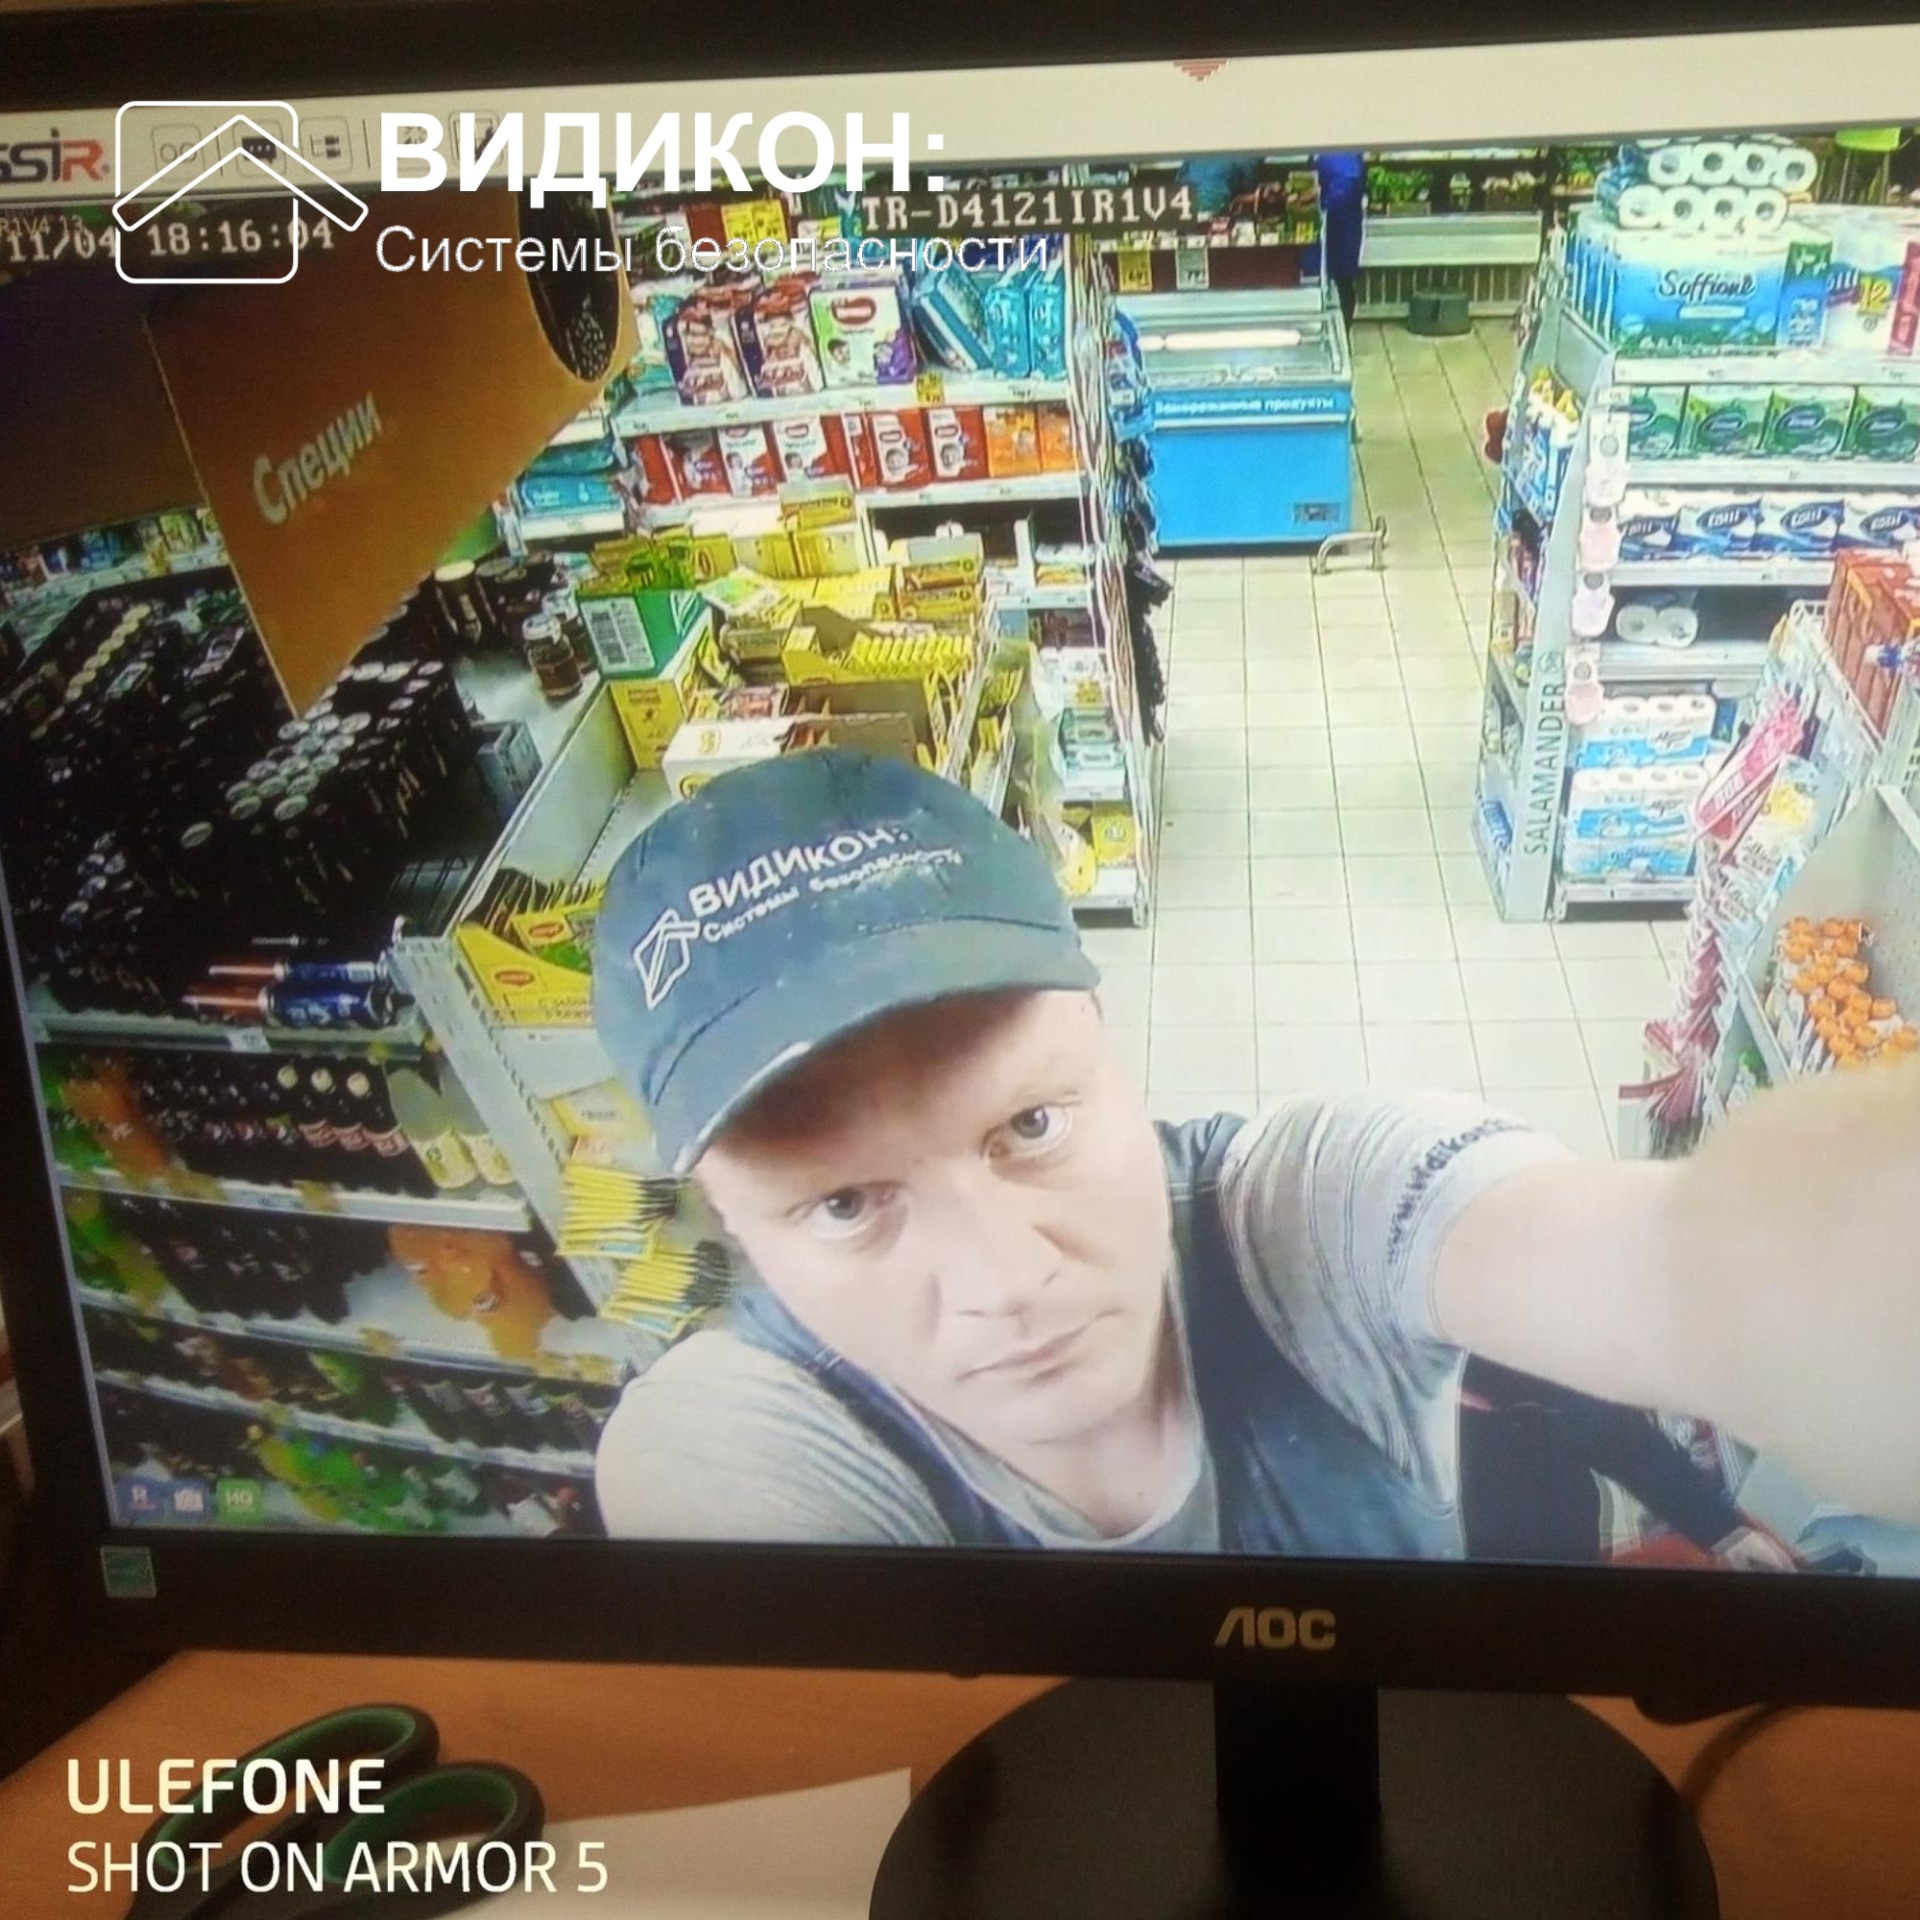 камера наблюдения в магазине